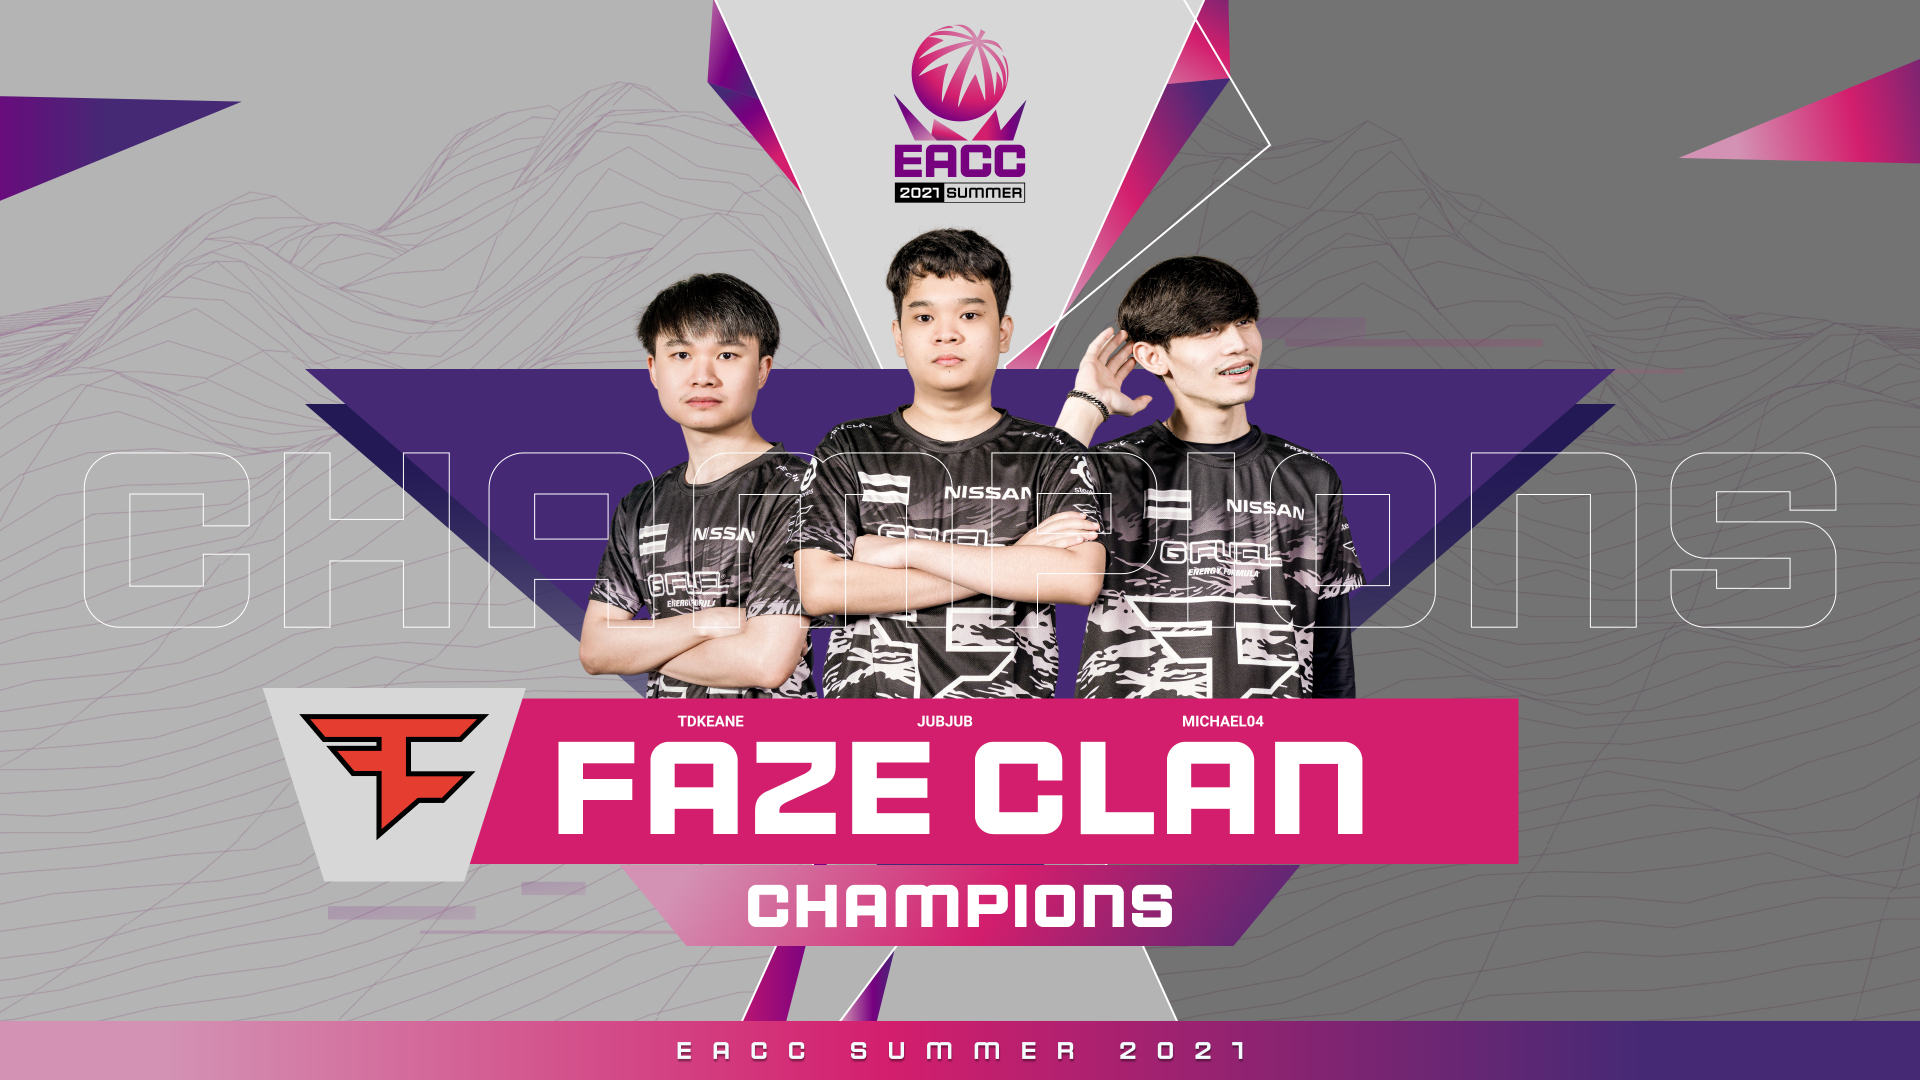 EACC Summer 2021 khép lại với FaZe Clan lên ngôi vô địch cực kì thuyết phục